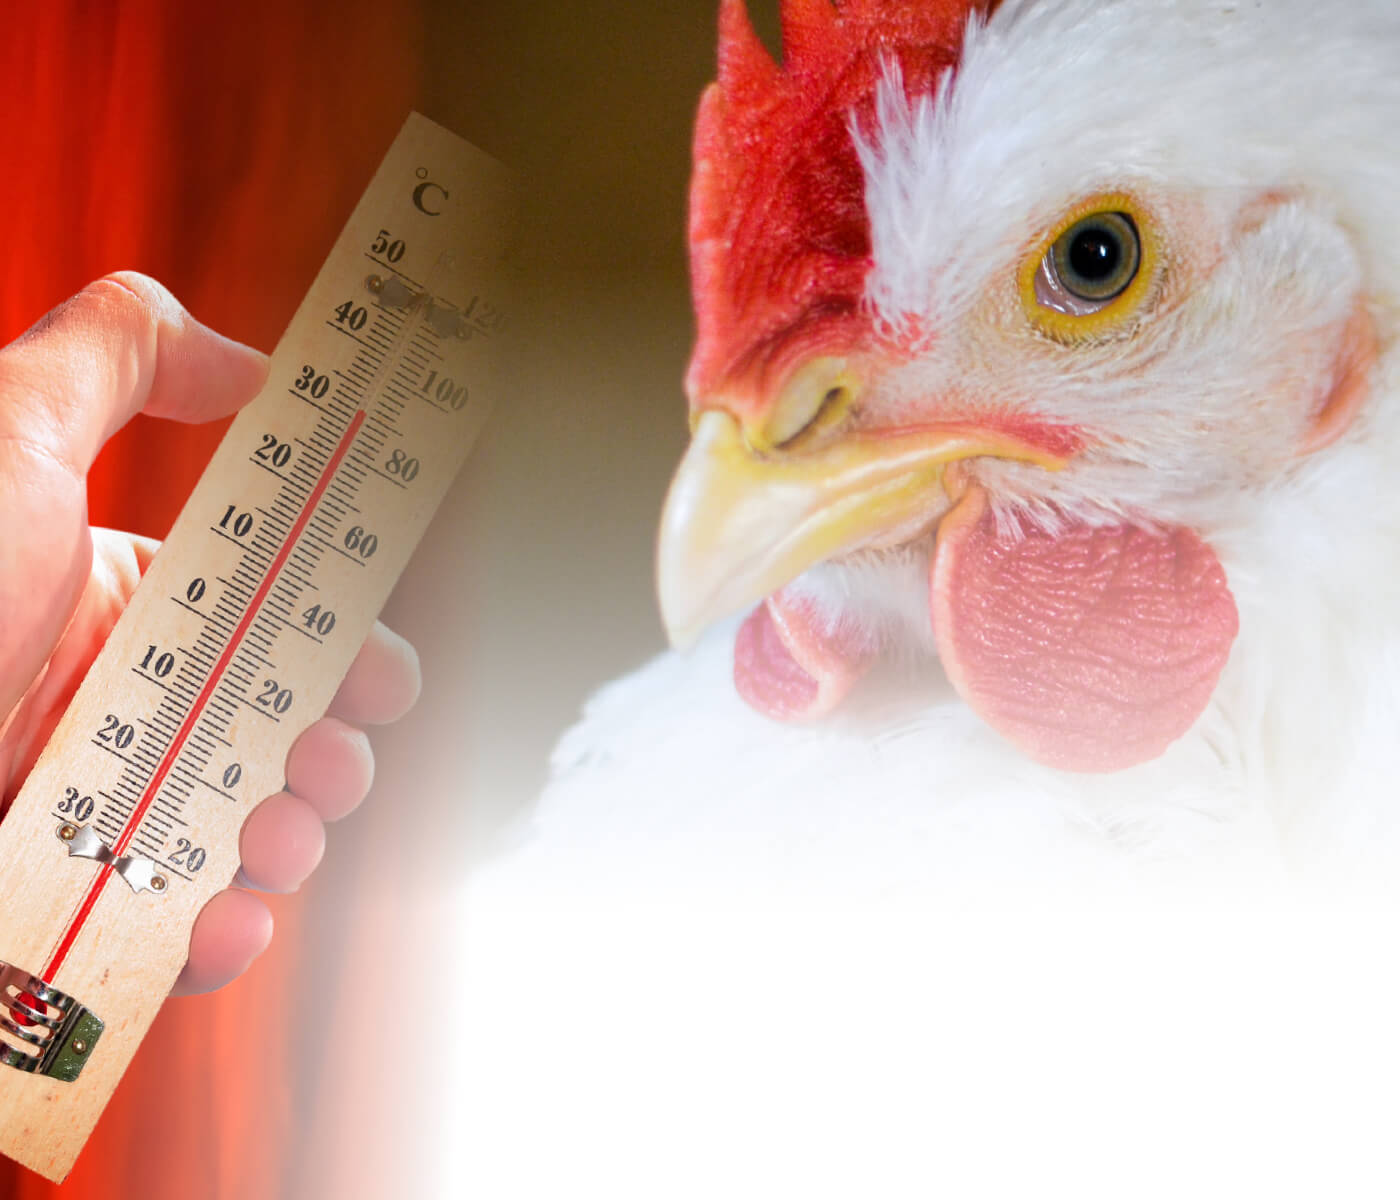 Manejo de frangos de corte em clima quente